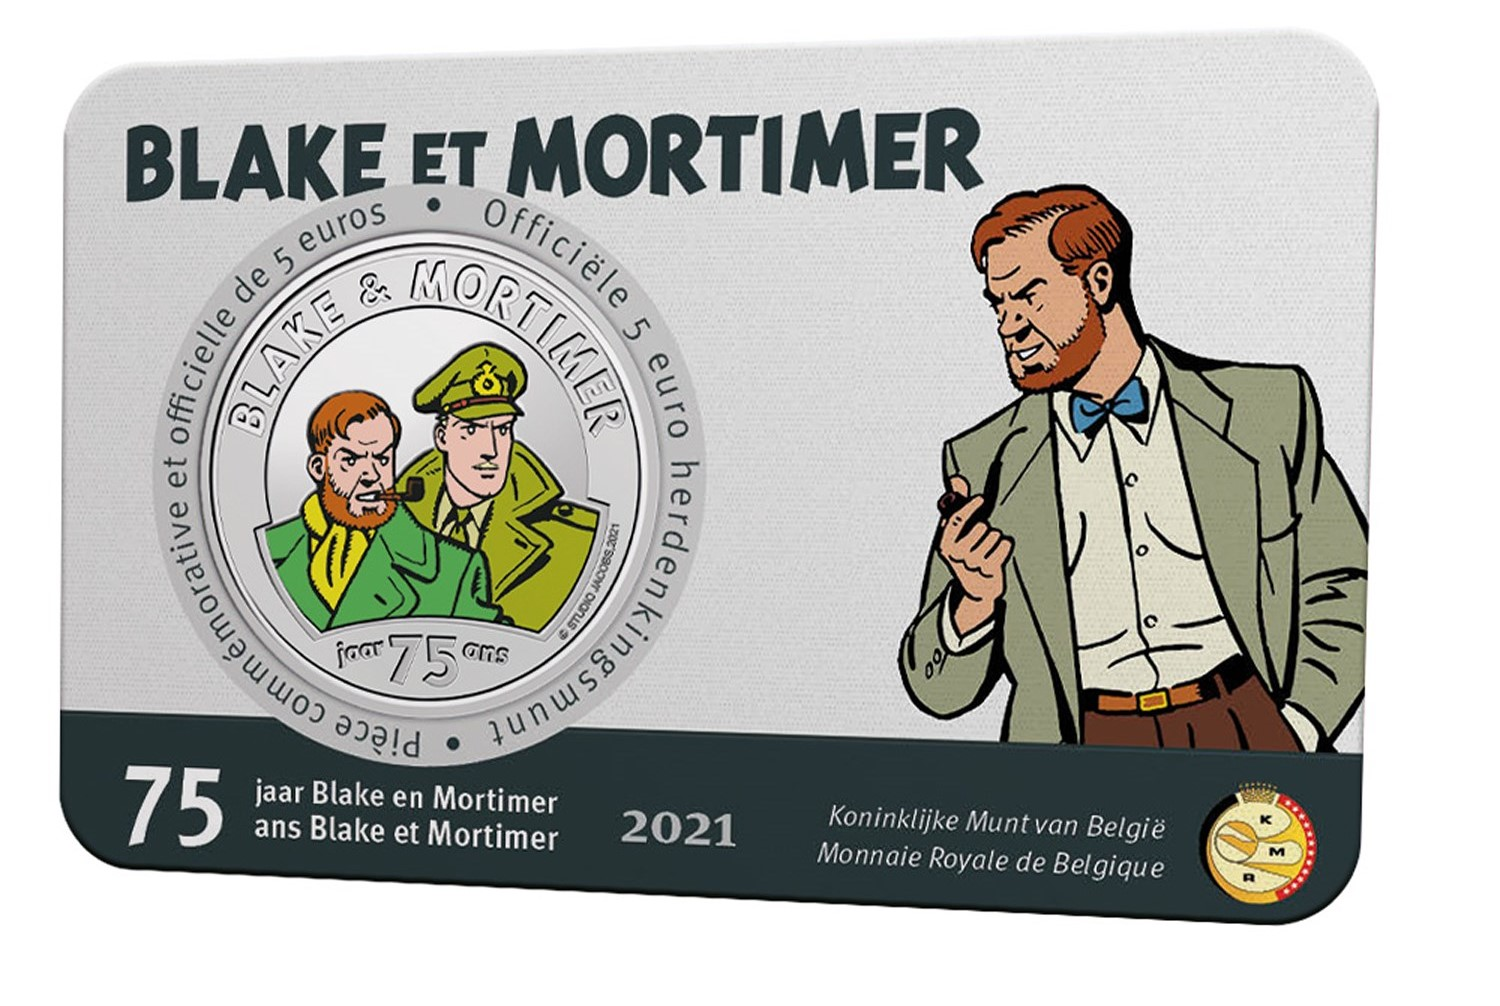 blake-et-mortimer-card-vz-